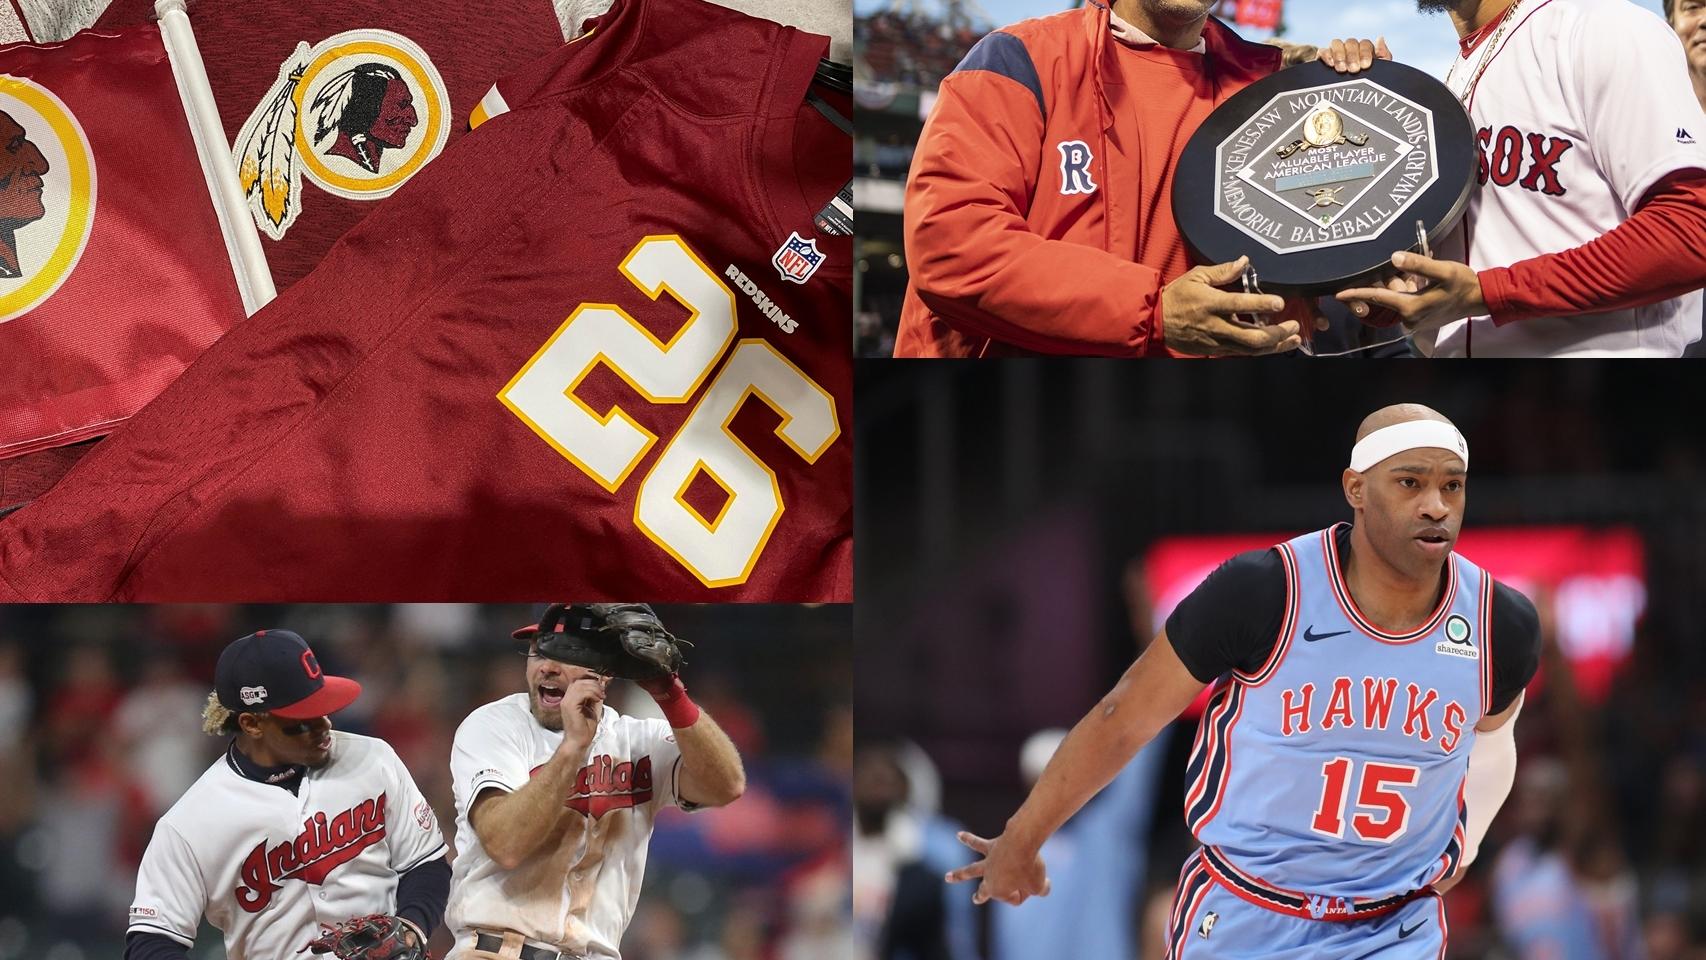 El logo y la camiseta de los Washington Redskins, Vince Carter con la camiseta de los Atlanta Hawks, el premio Kenesaw Mountain Landis y dos jugadores de los Cleveland Indians